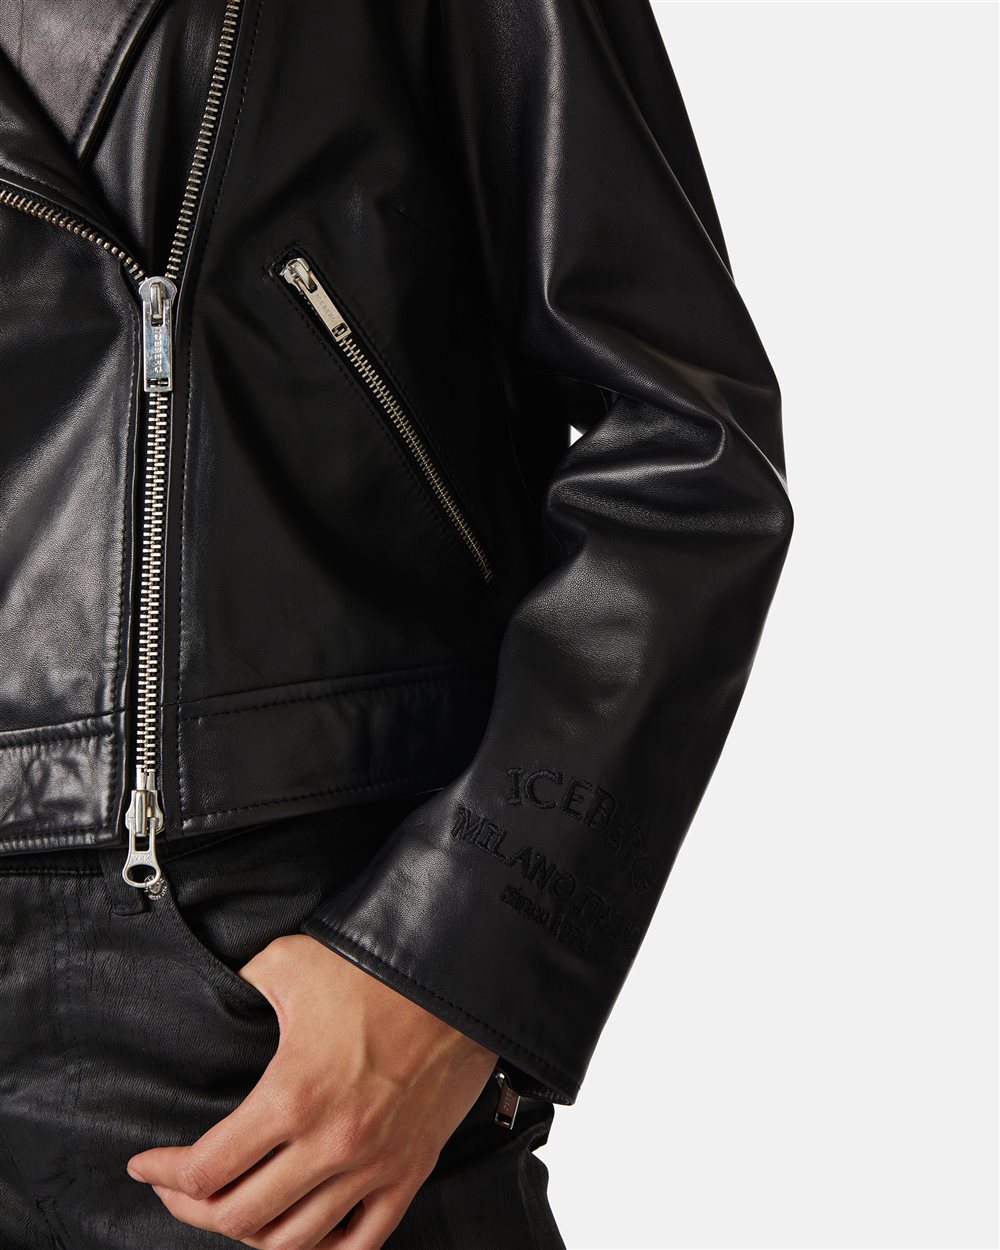 Biker jacket with logo - Iceberg - Official Website